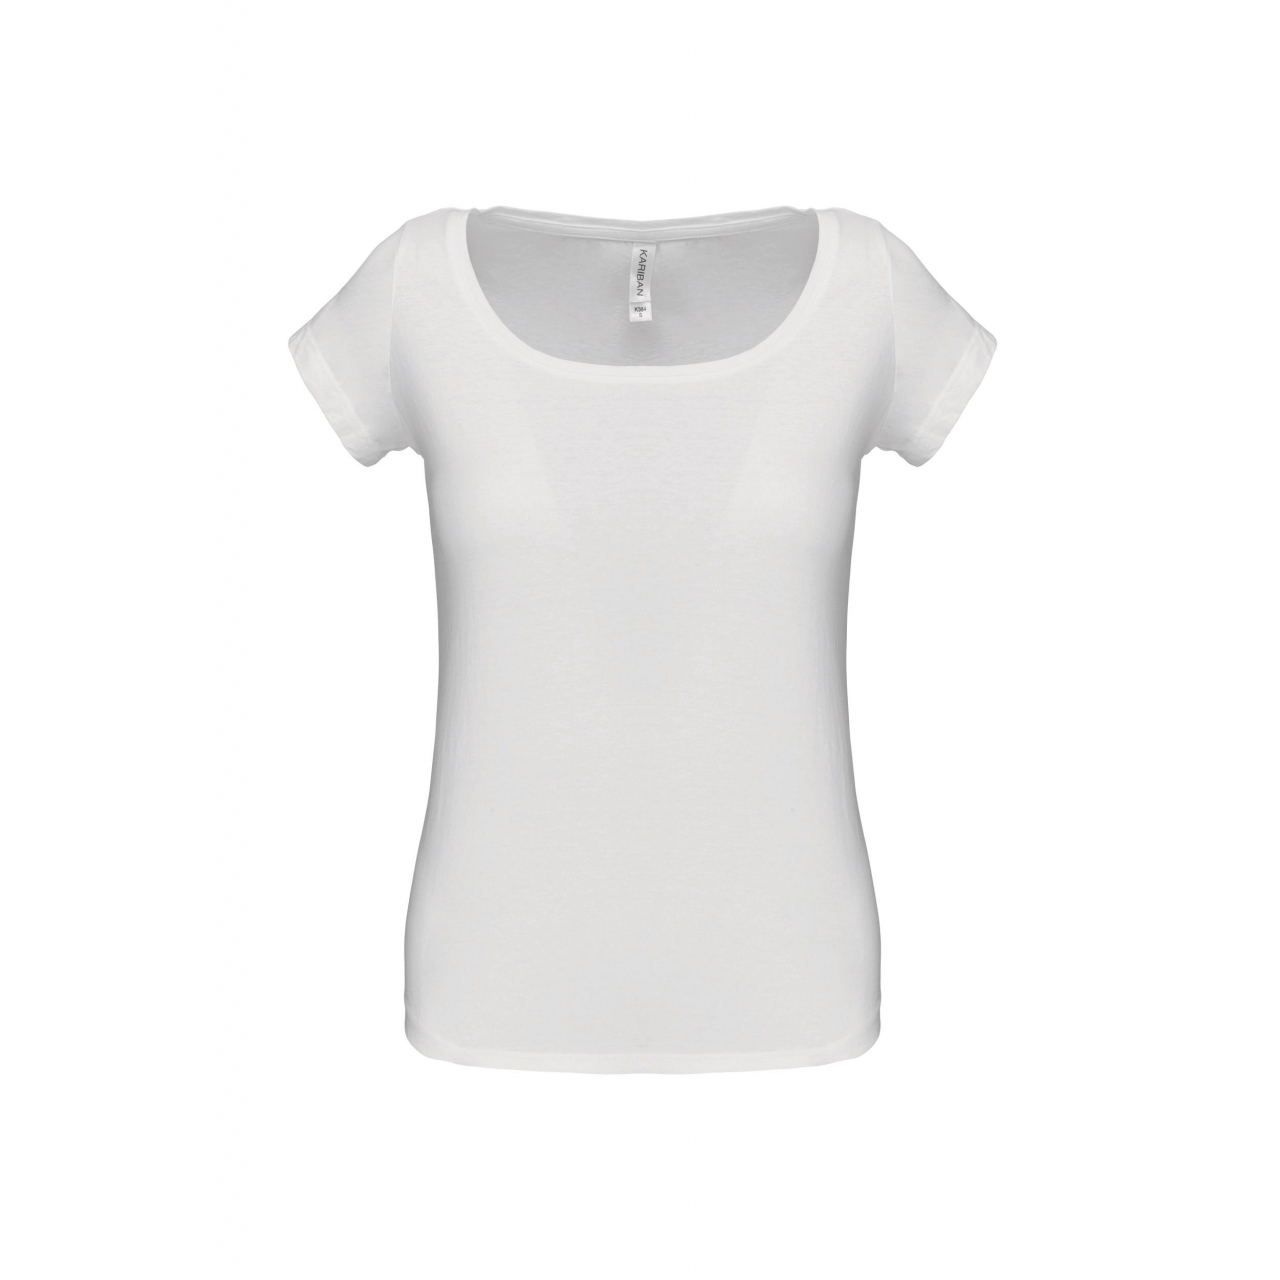 Dámské tričko Kariban s lodičkovým výstřihem - bílé, XXL